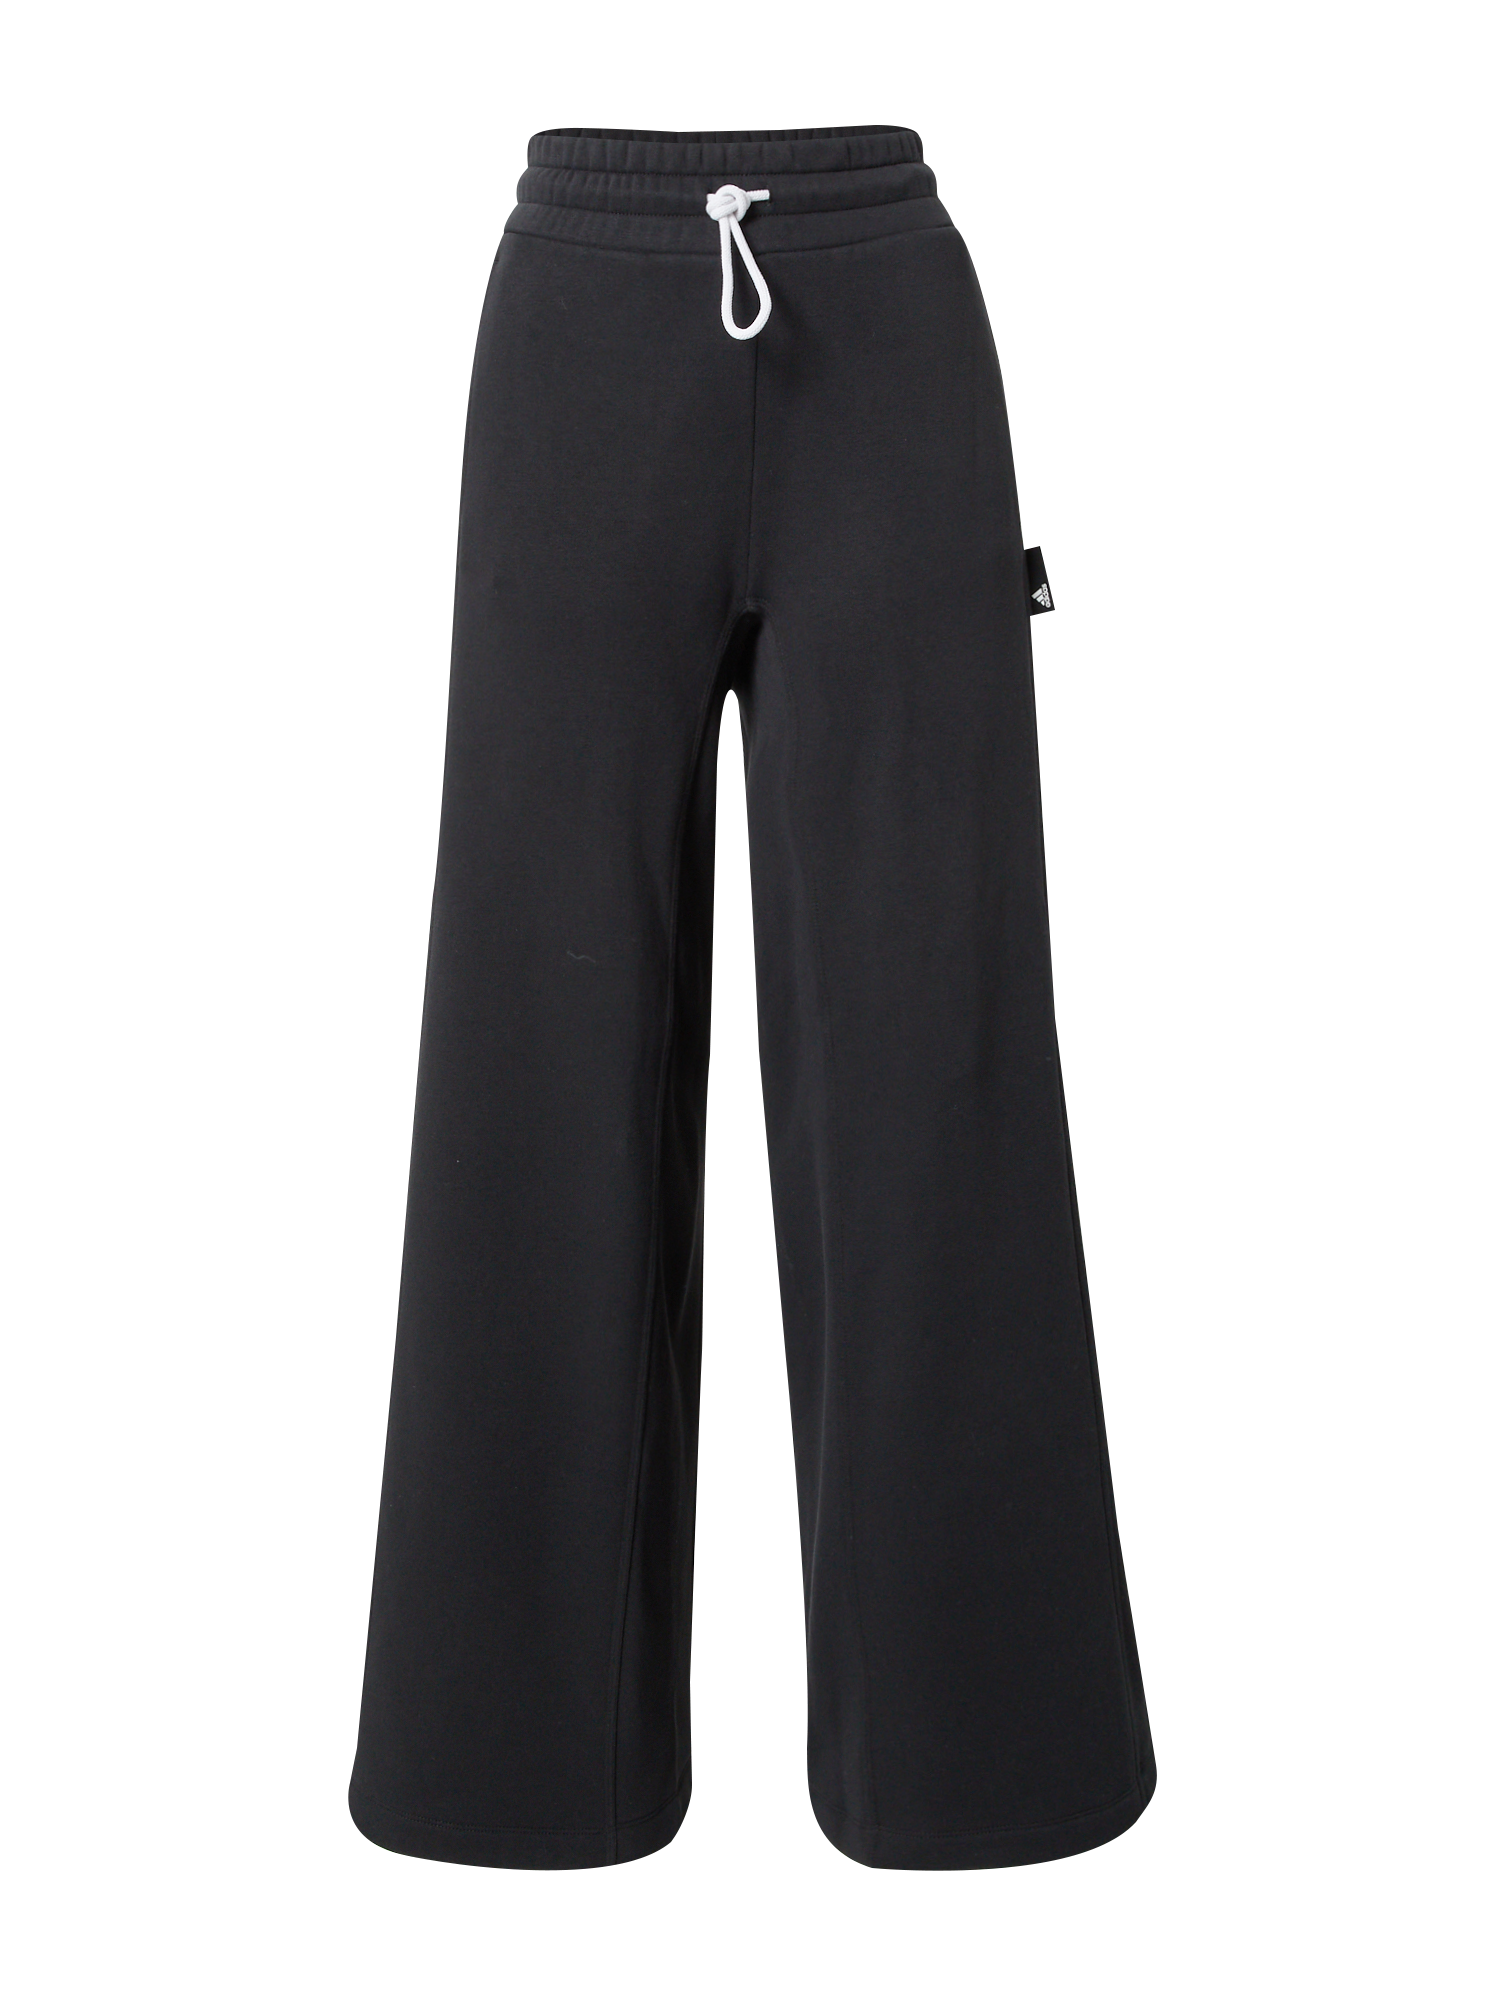 Odzież Kobiety ADIDAS PERFORMANCE Spodnie sportowe w kolorze Czarnym 